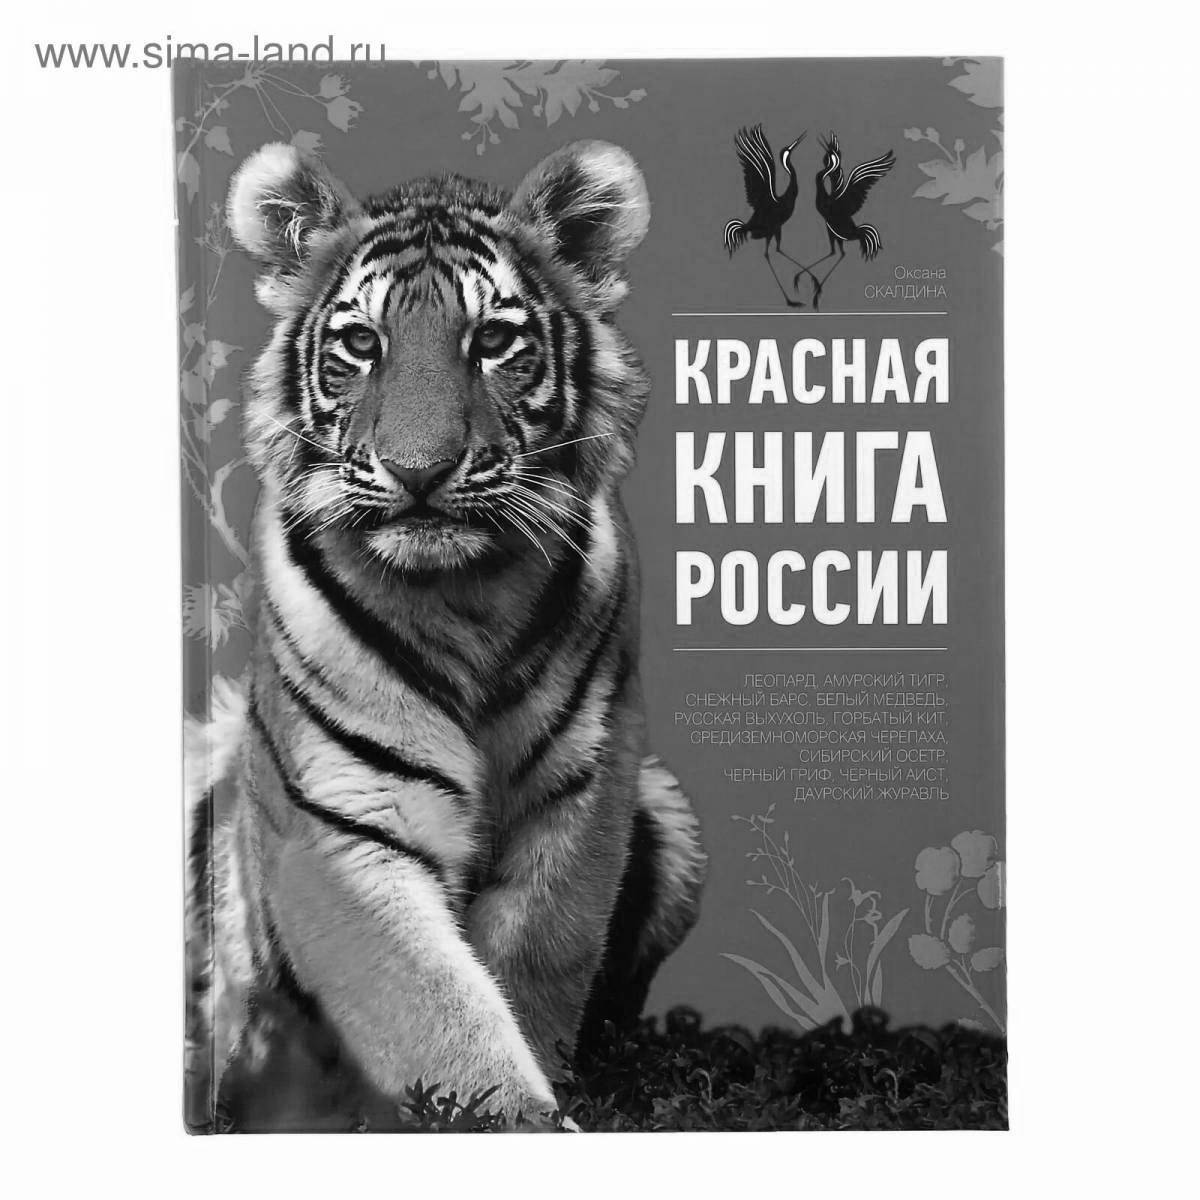 Пленительная обложка красной книги россии